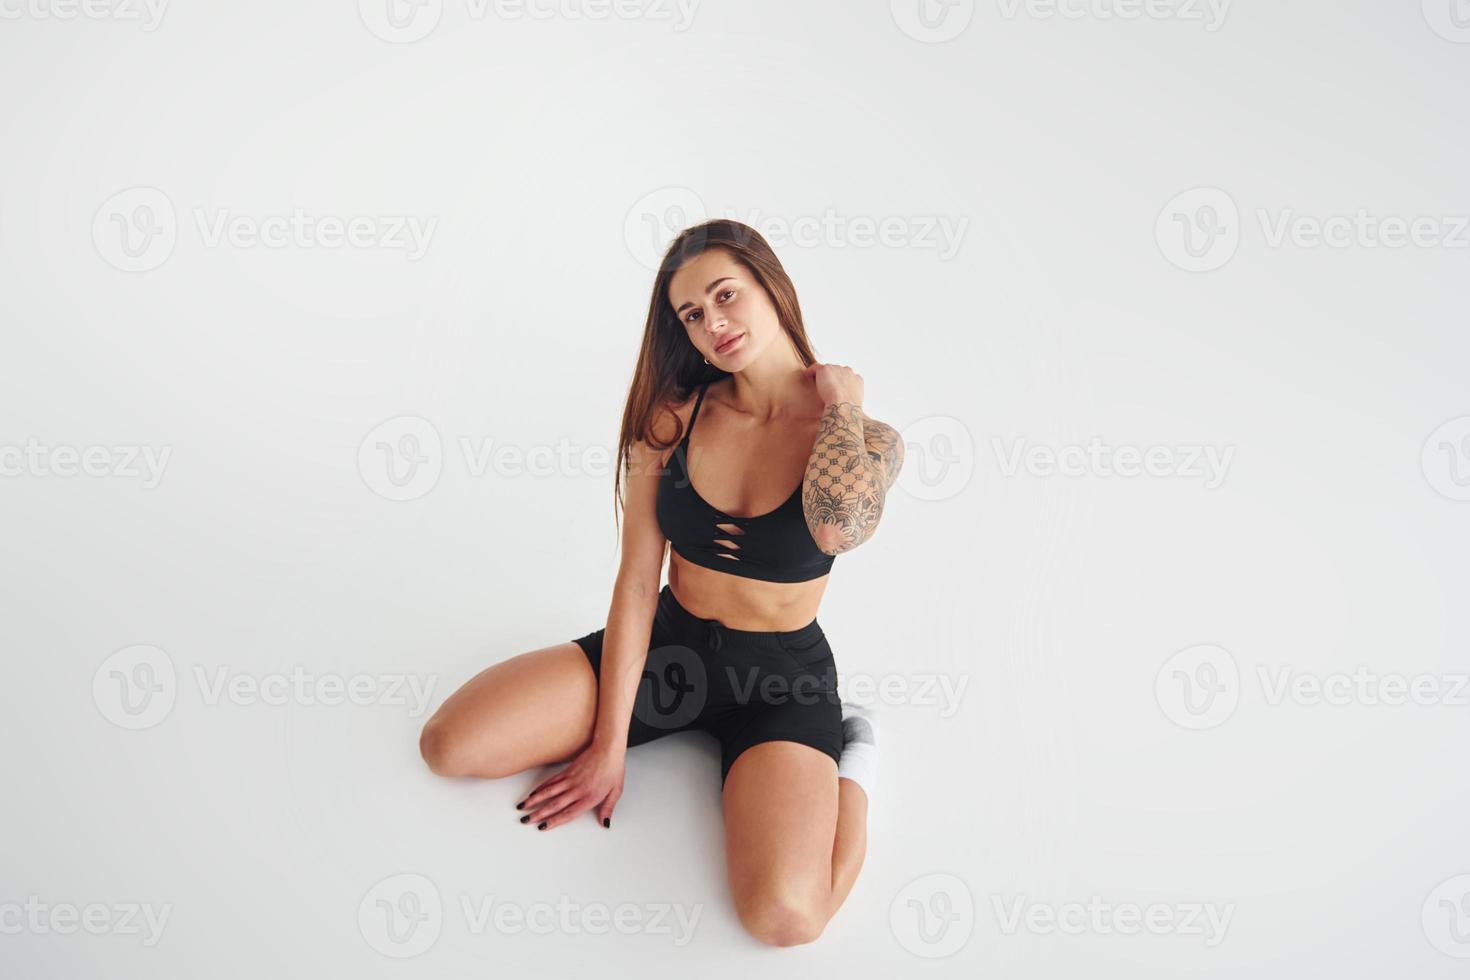 est assis sur le sol. belle femme sportive séduisante avec un corps sexy pose en studio photo